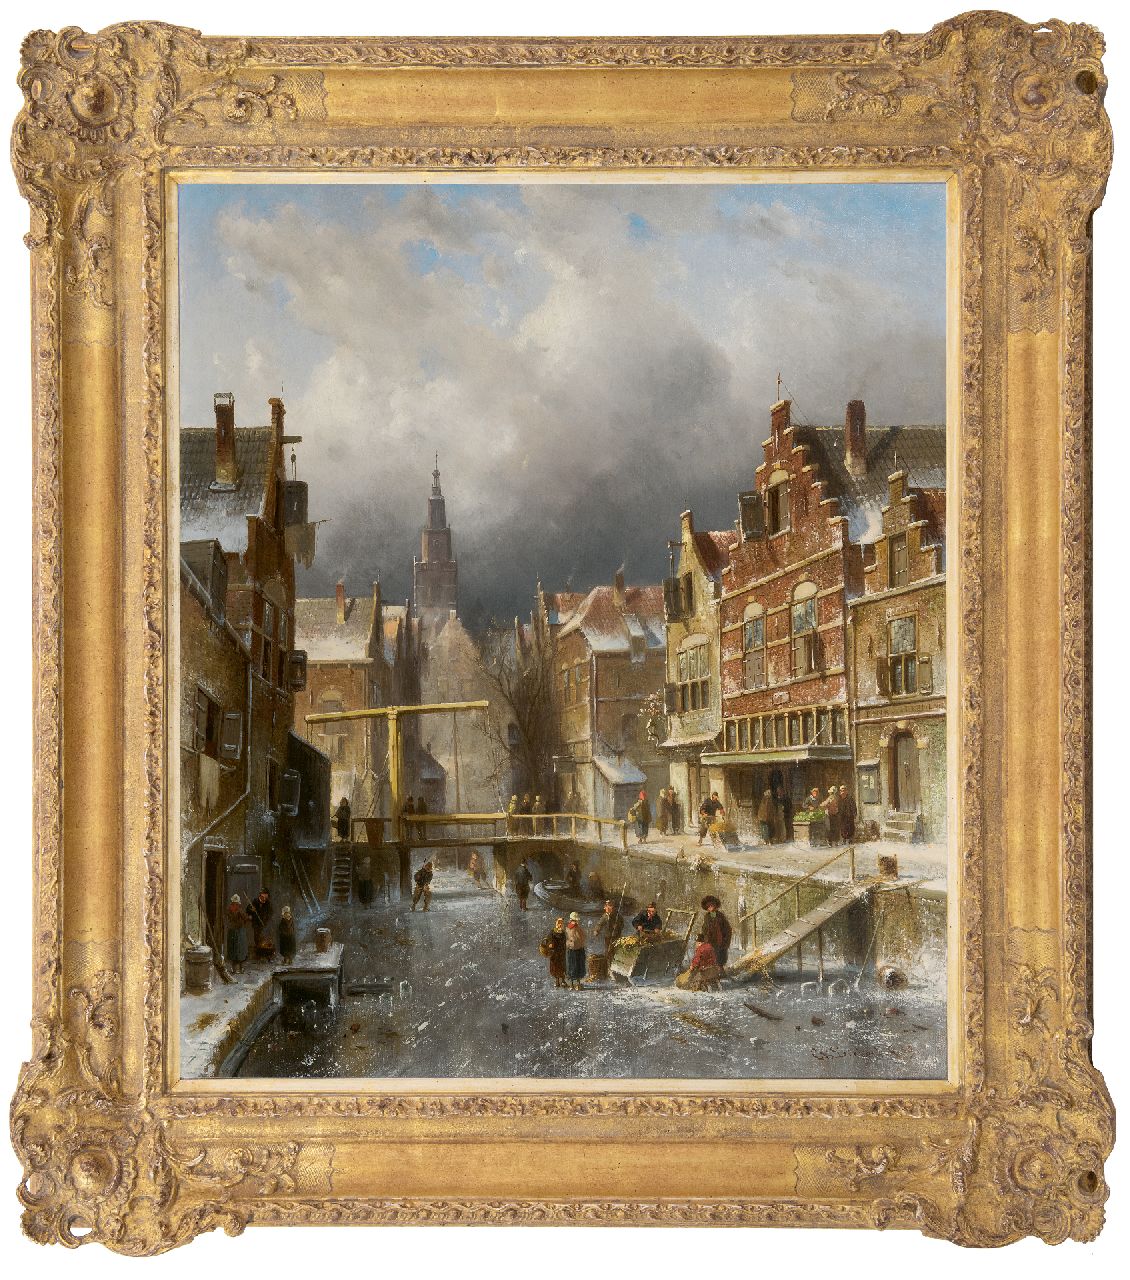 Leickert C.H.J.  | 'Charles' Henri Joseph Leickert | Schilderijen te koop aangeboden | Drukbevolkte stadsgracht bij winter, olieverf op doek 70,1 x 60,0 cm, gesigneerd rechtsonder en gedateerd '85